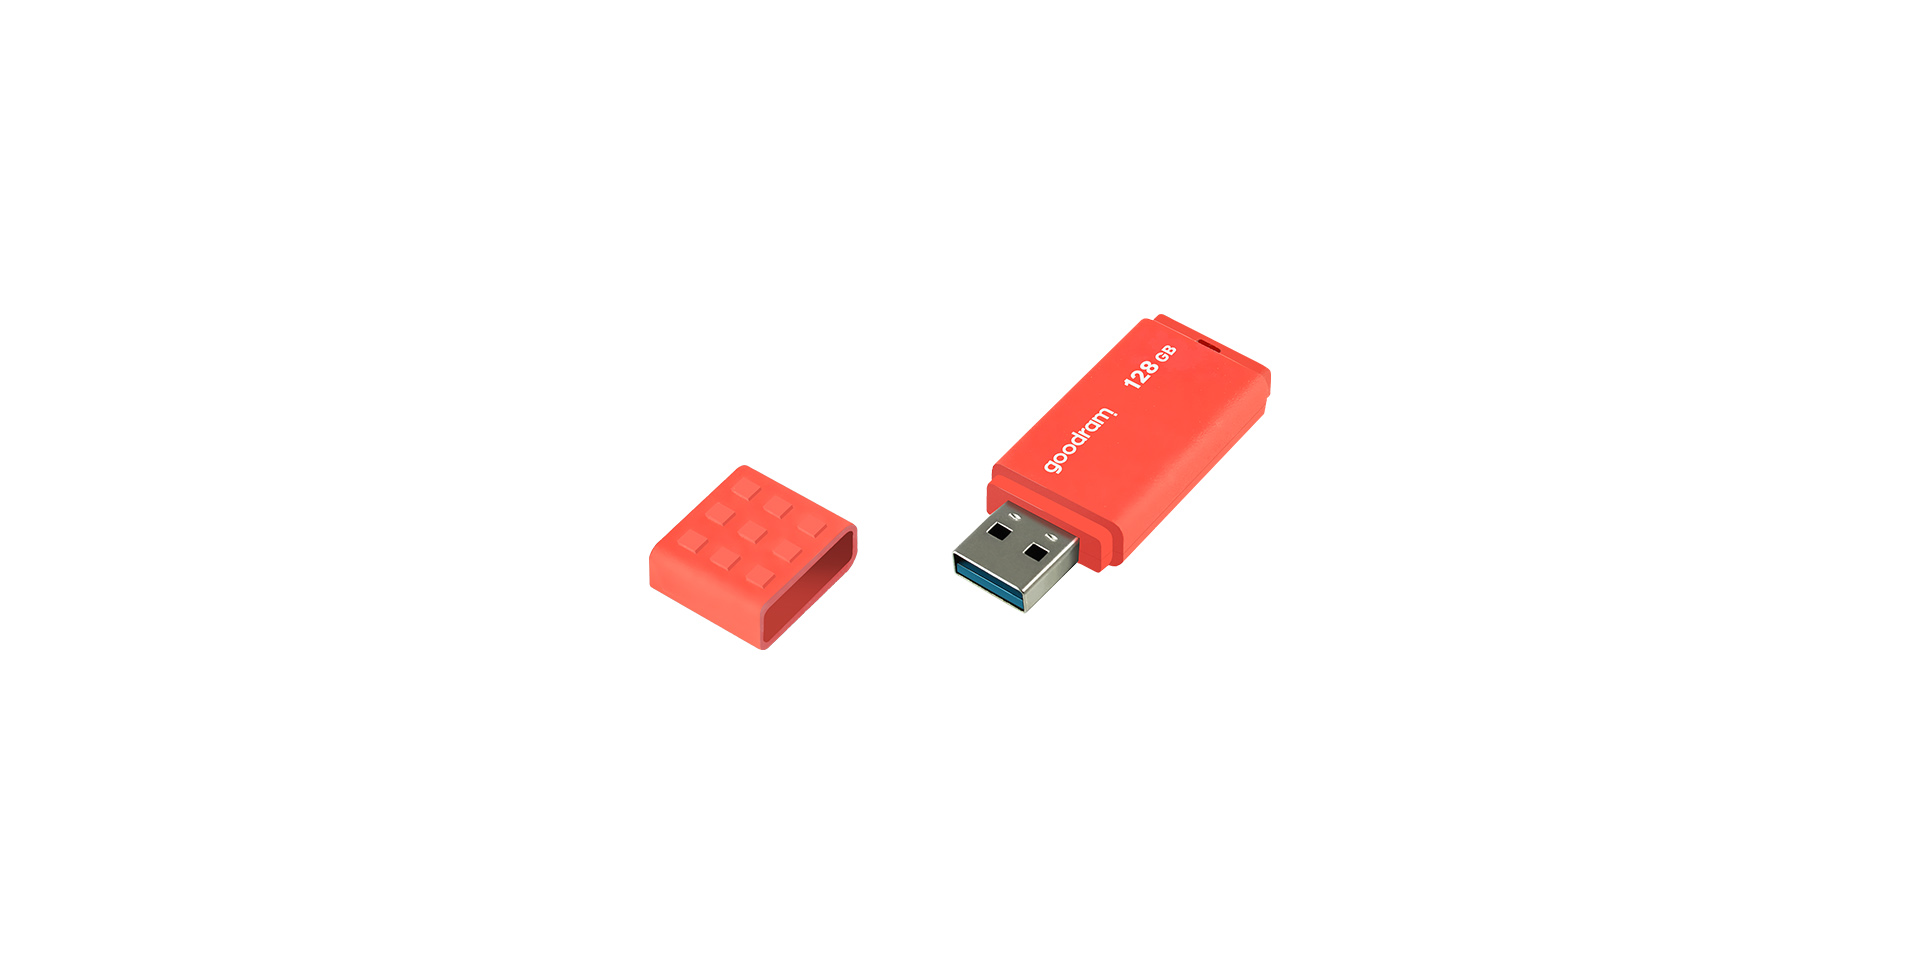 64GB USB 3.0 Orange - UME3